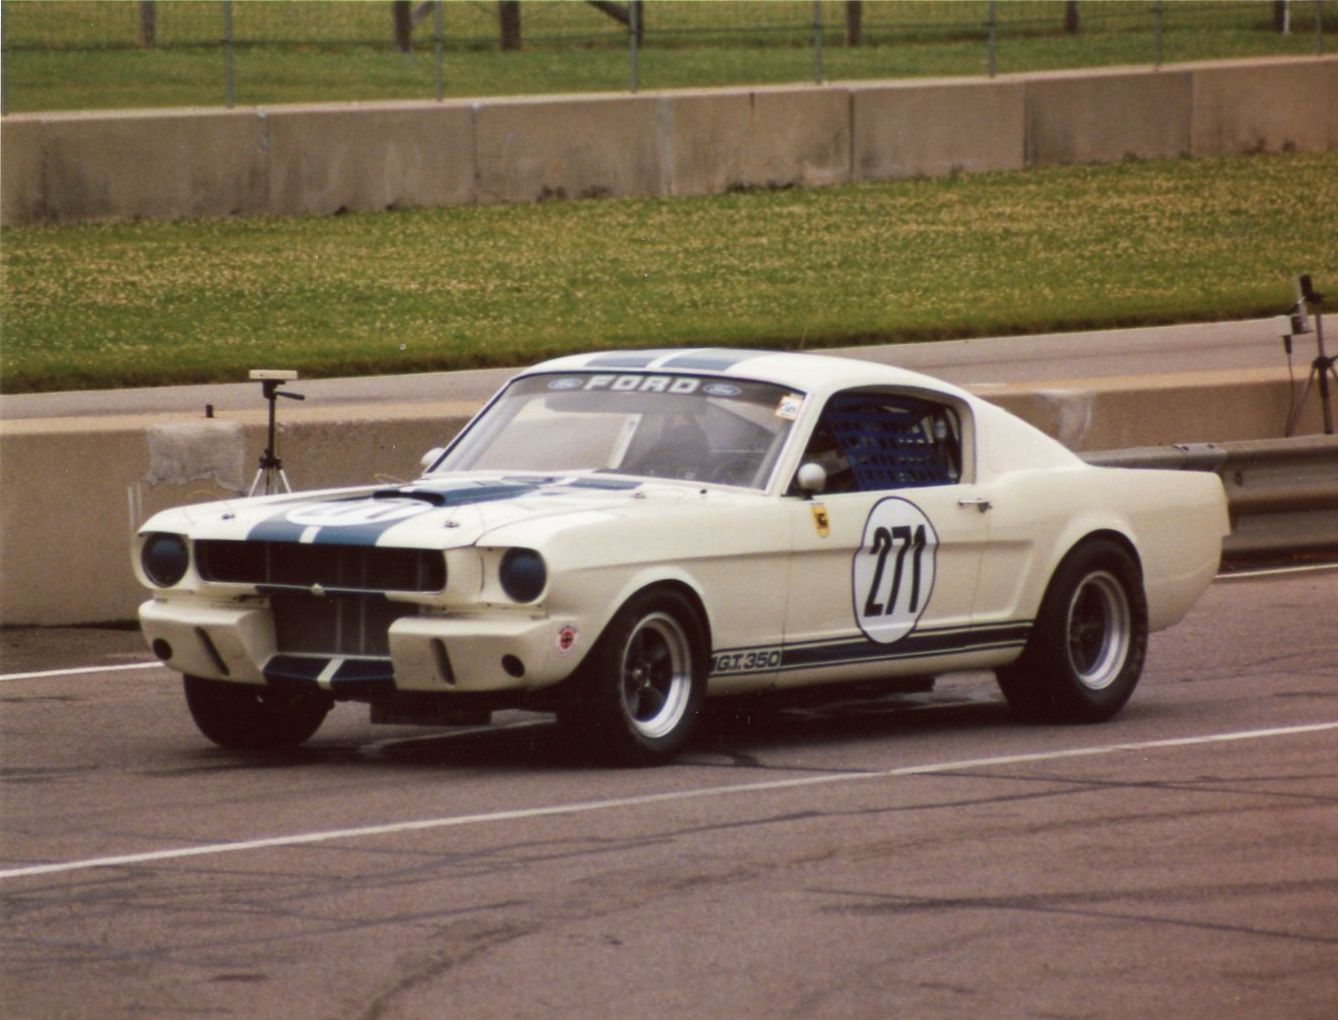 2003 Mid Ohio Race Track